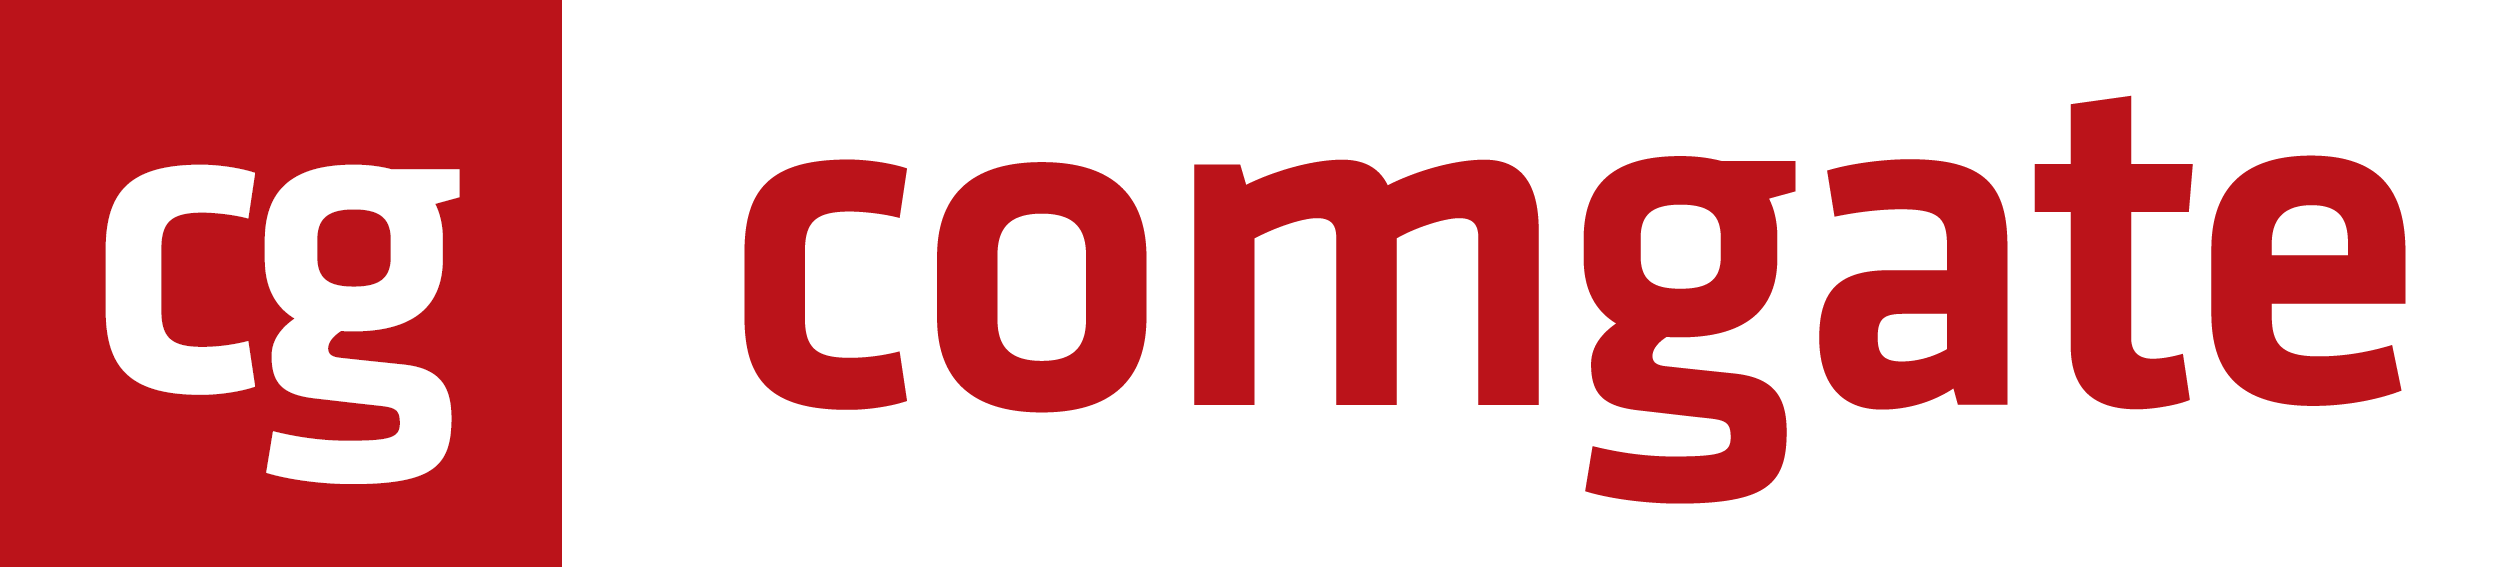 ComGate_logo